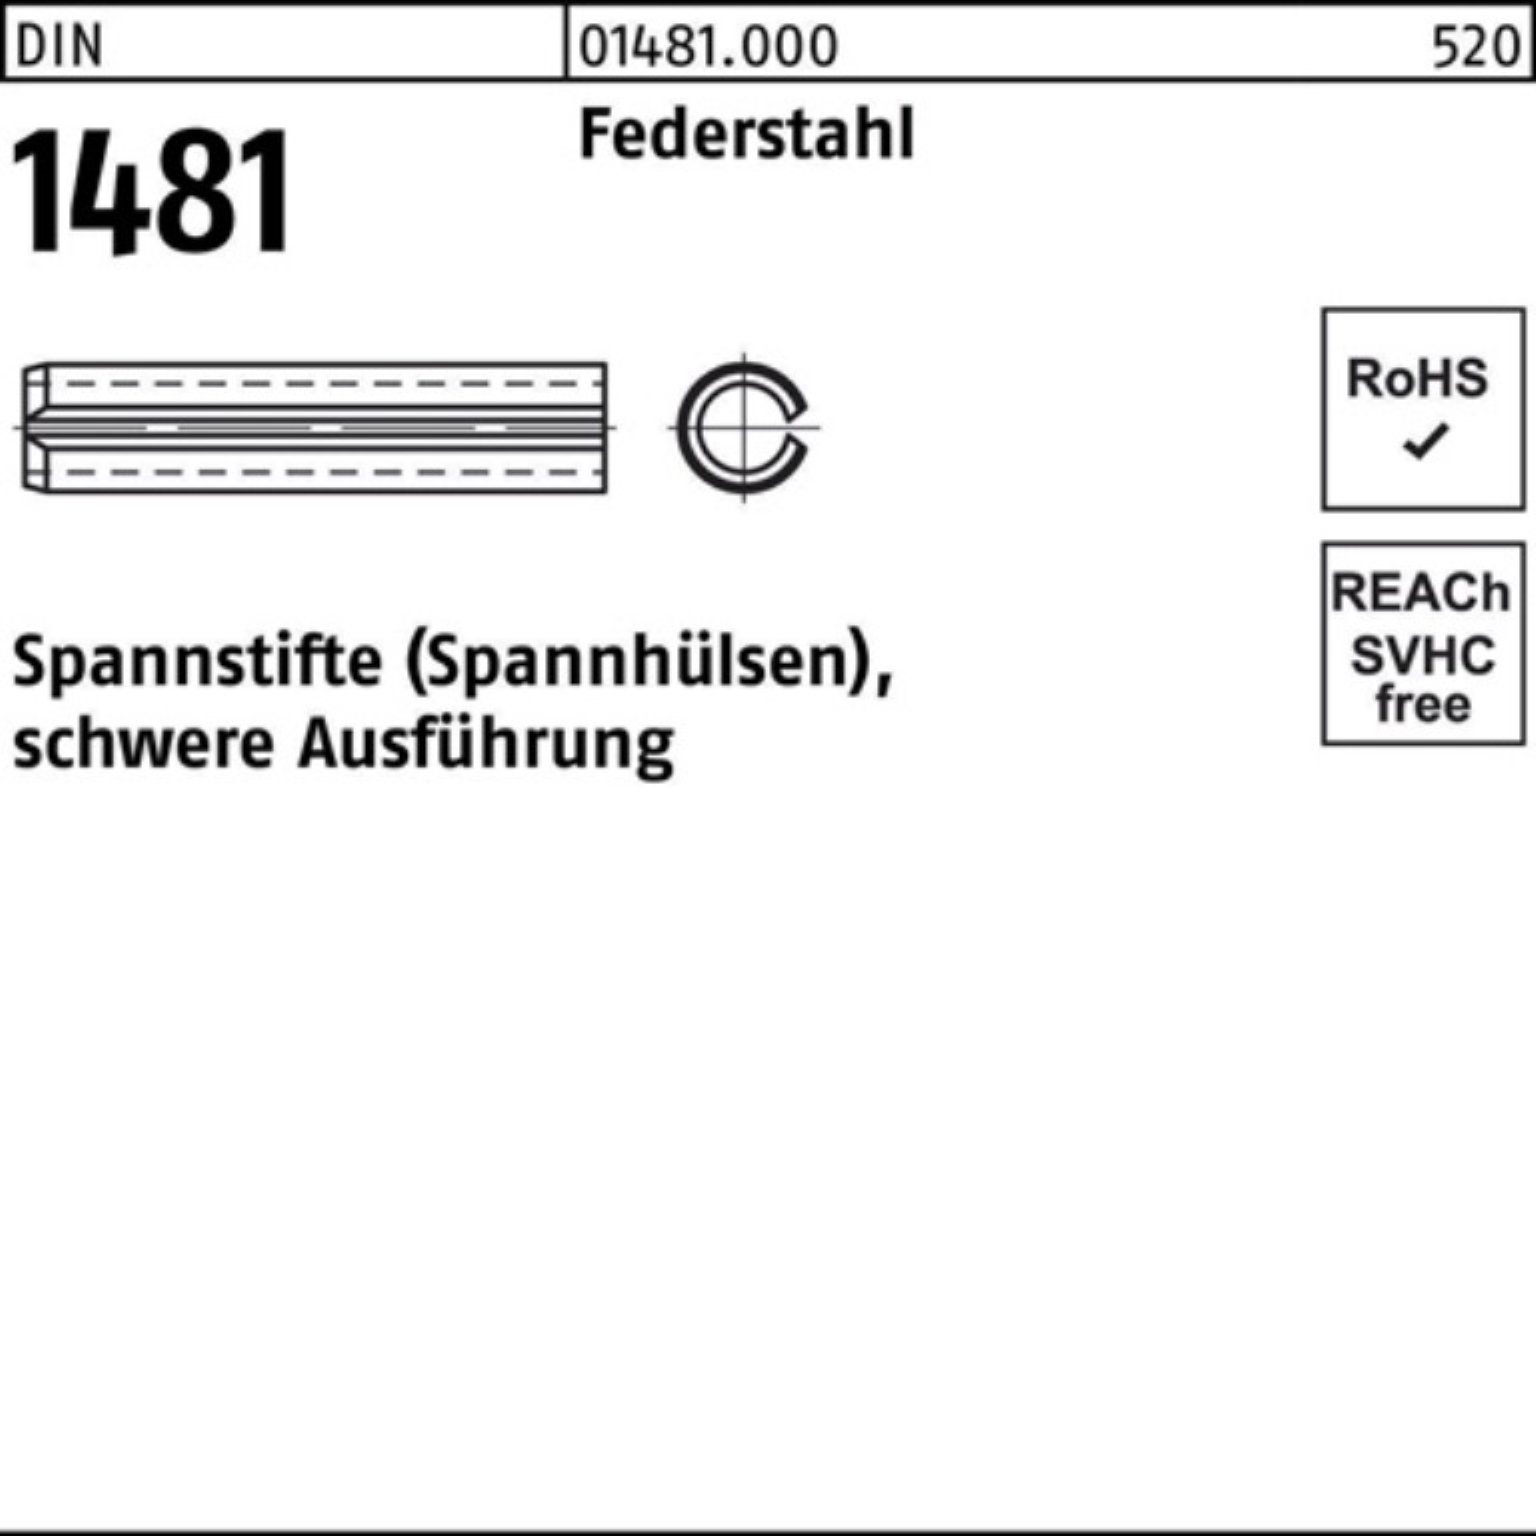 Reyher Spannstift 100er Pack Spannstift DIN 1481 28x 100 Federstahl schwere Ausführung